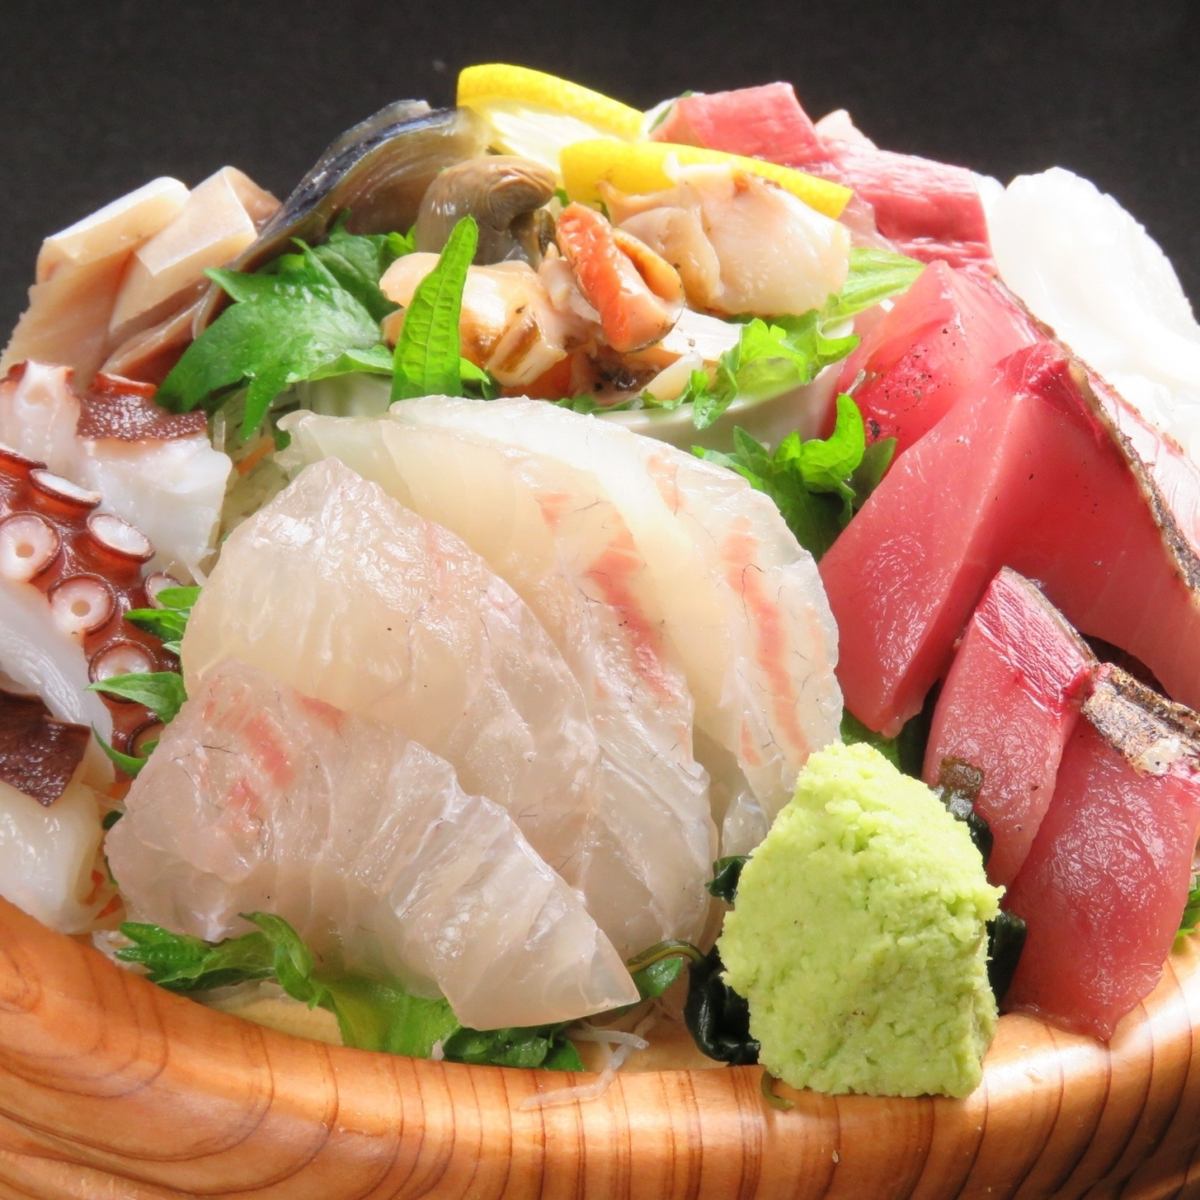 在晚上'Wabisuke'享用美味鲜鱼的海鲜酒吧